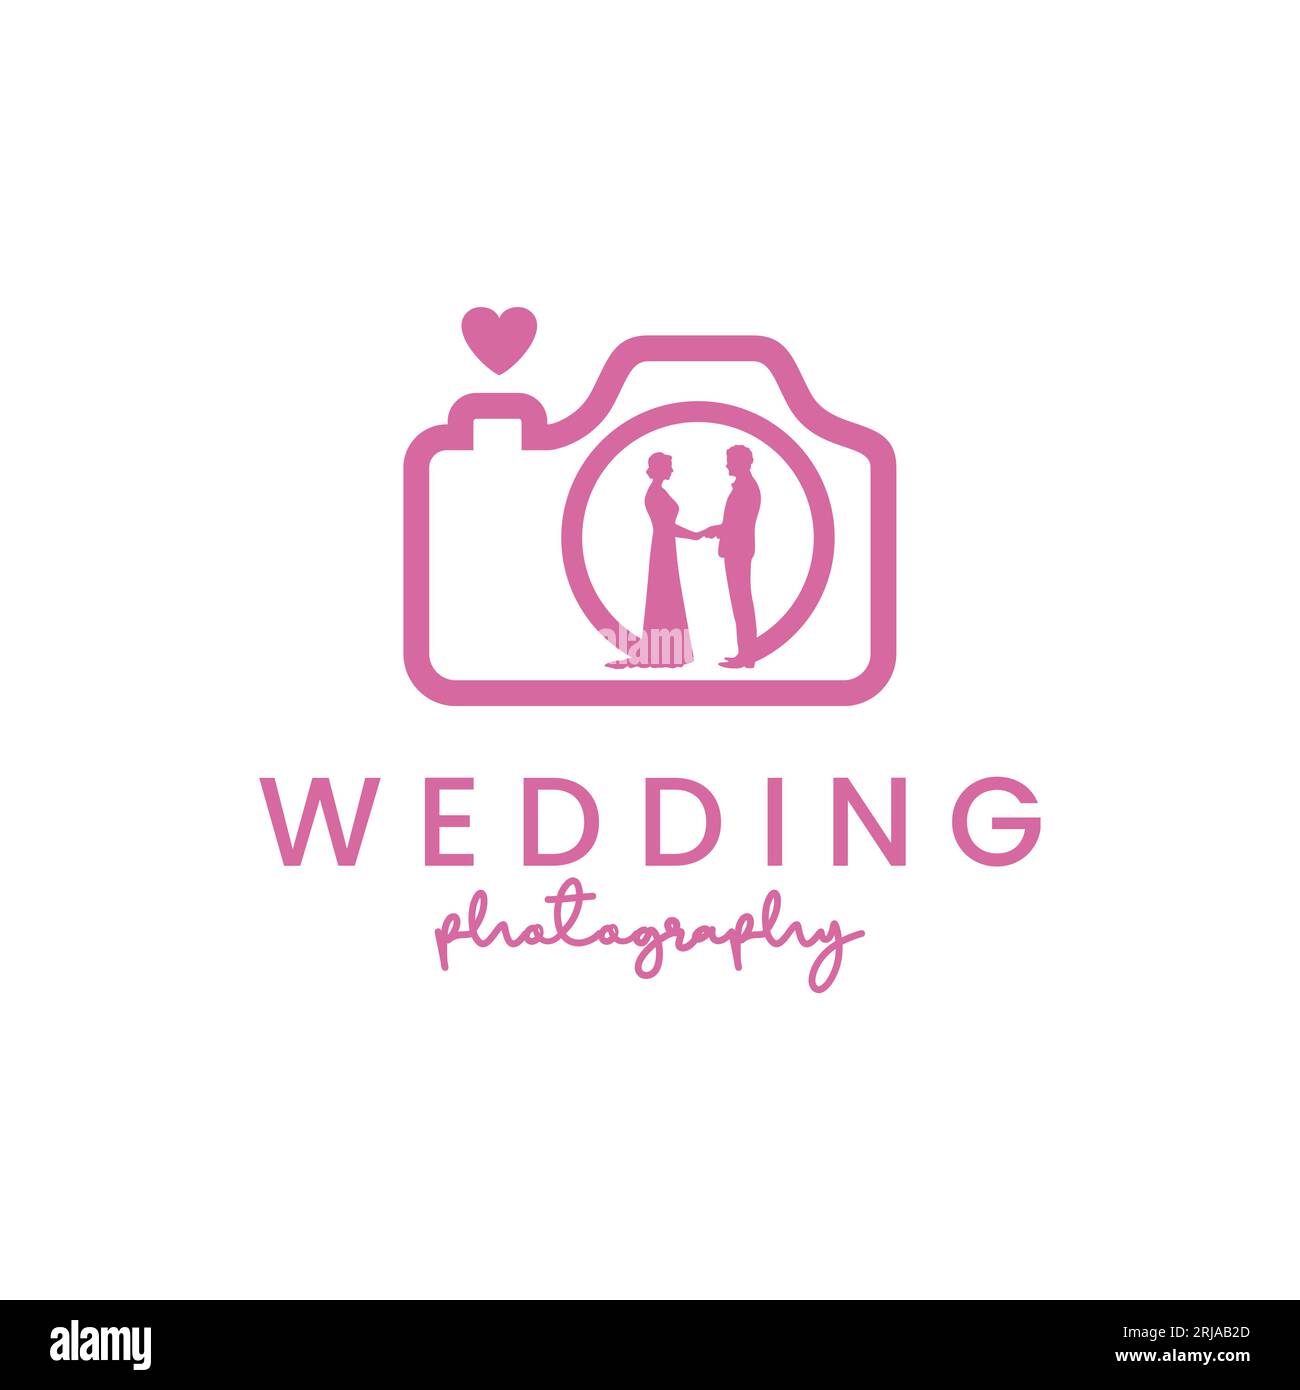 camera and wedding couple for wedding photography logo design Stock Vector